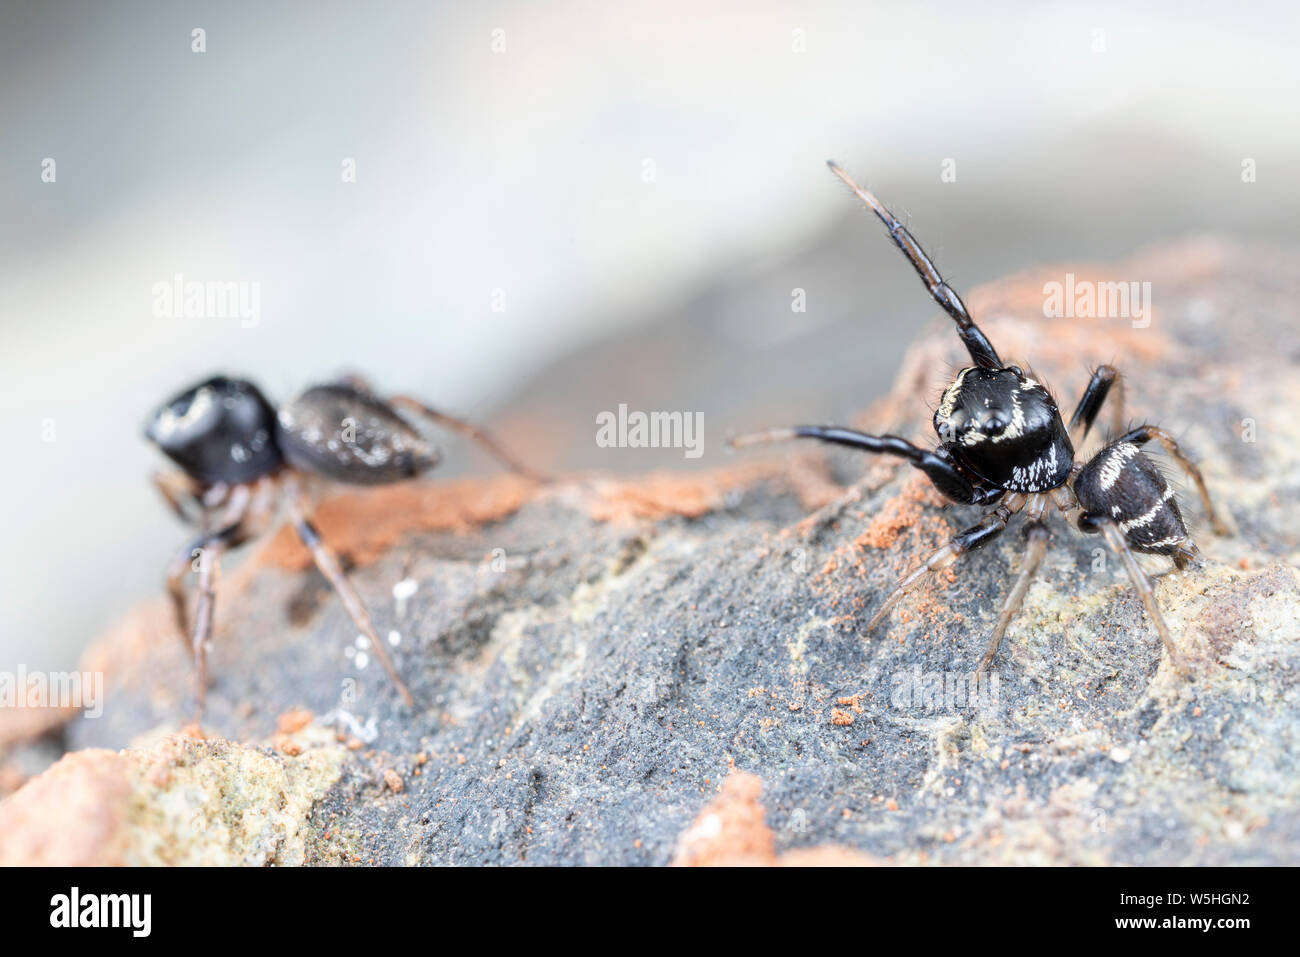 Coppia di coniugati Omodeus sp., ballare. Un minuscolo a strisce bianche e nere ant-eating jumping spider. Foto Stock